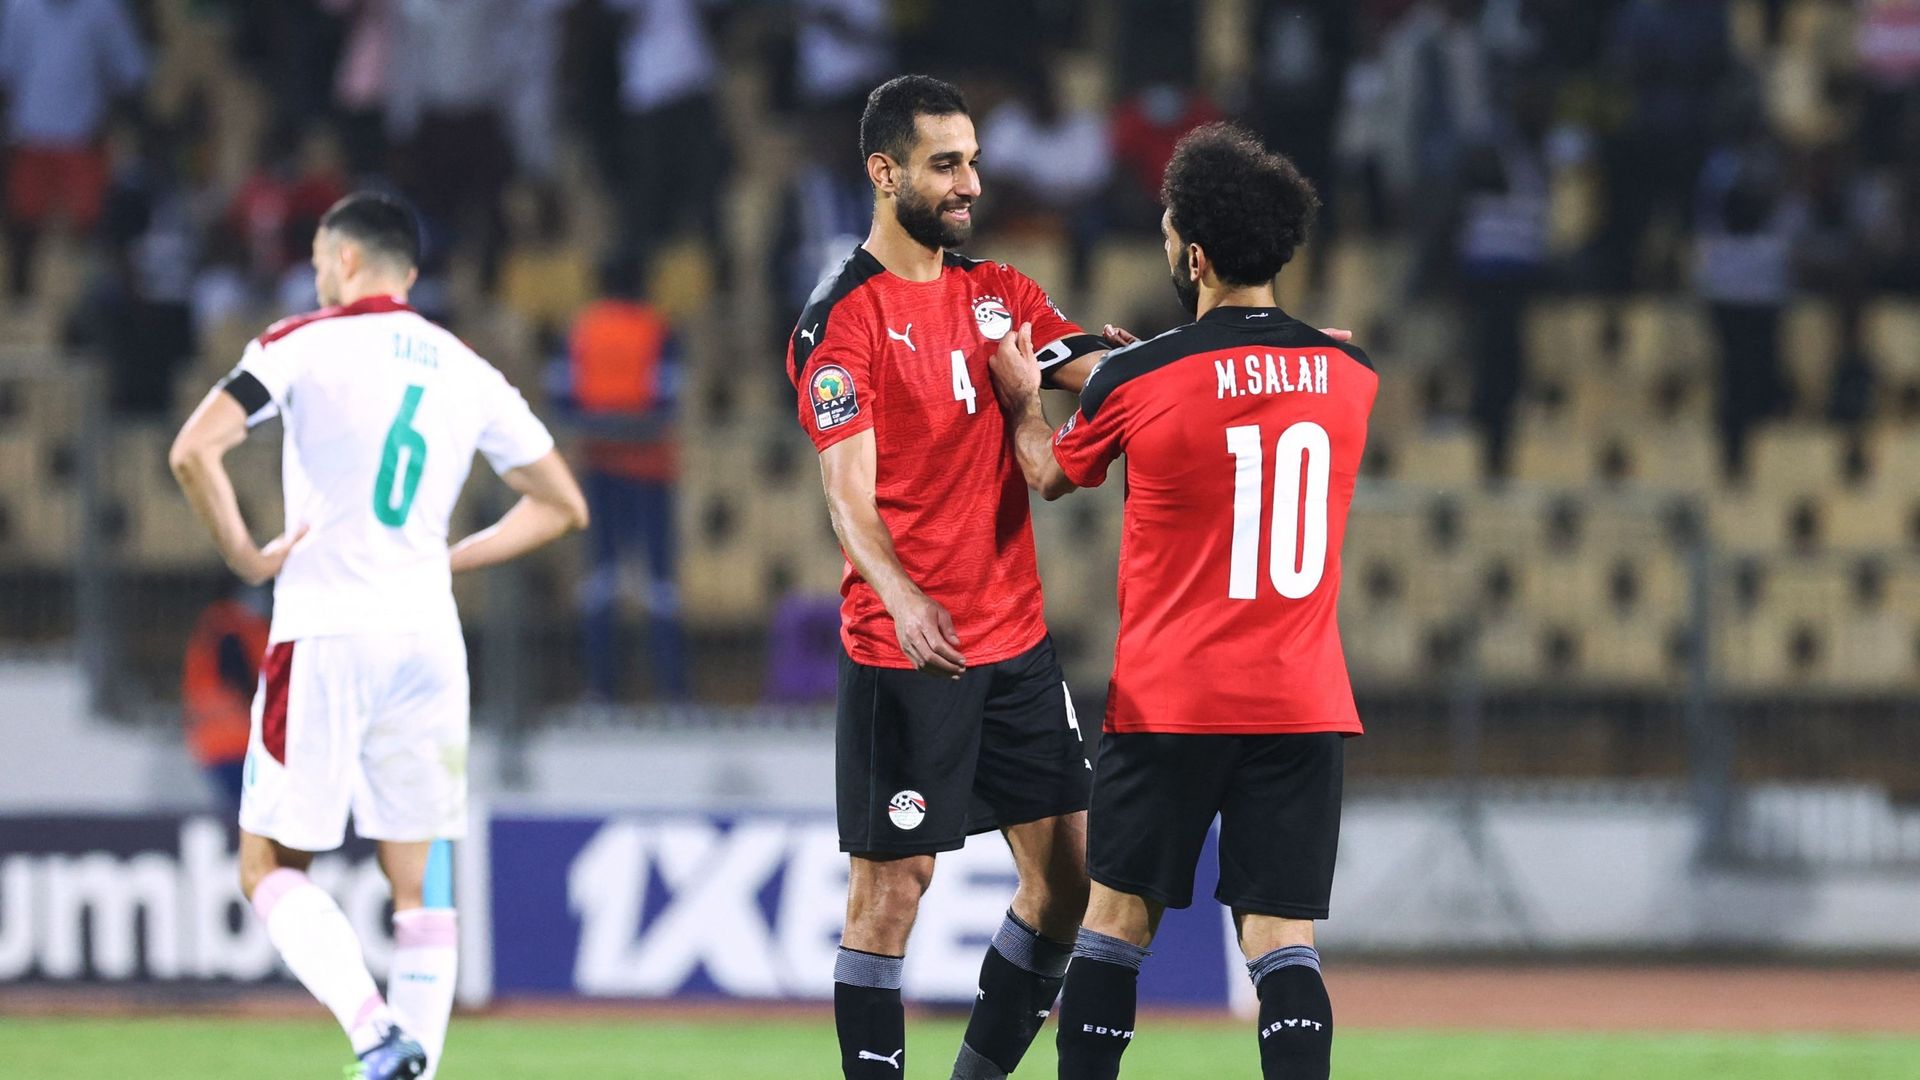 L'Egypte file en demi-finale de la CAN après avoir sorti le Maroc aux prolongations.